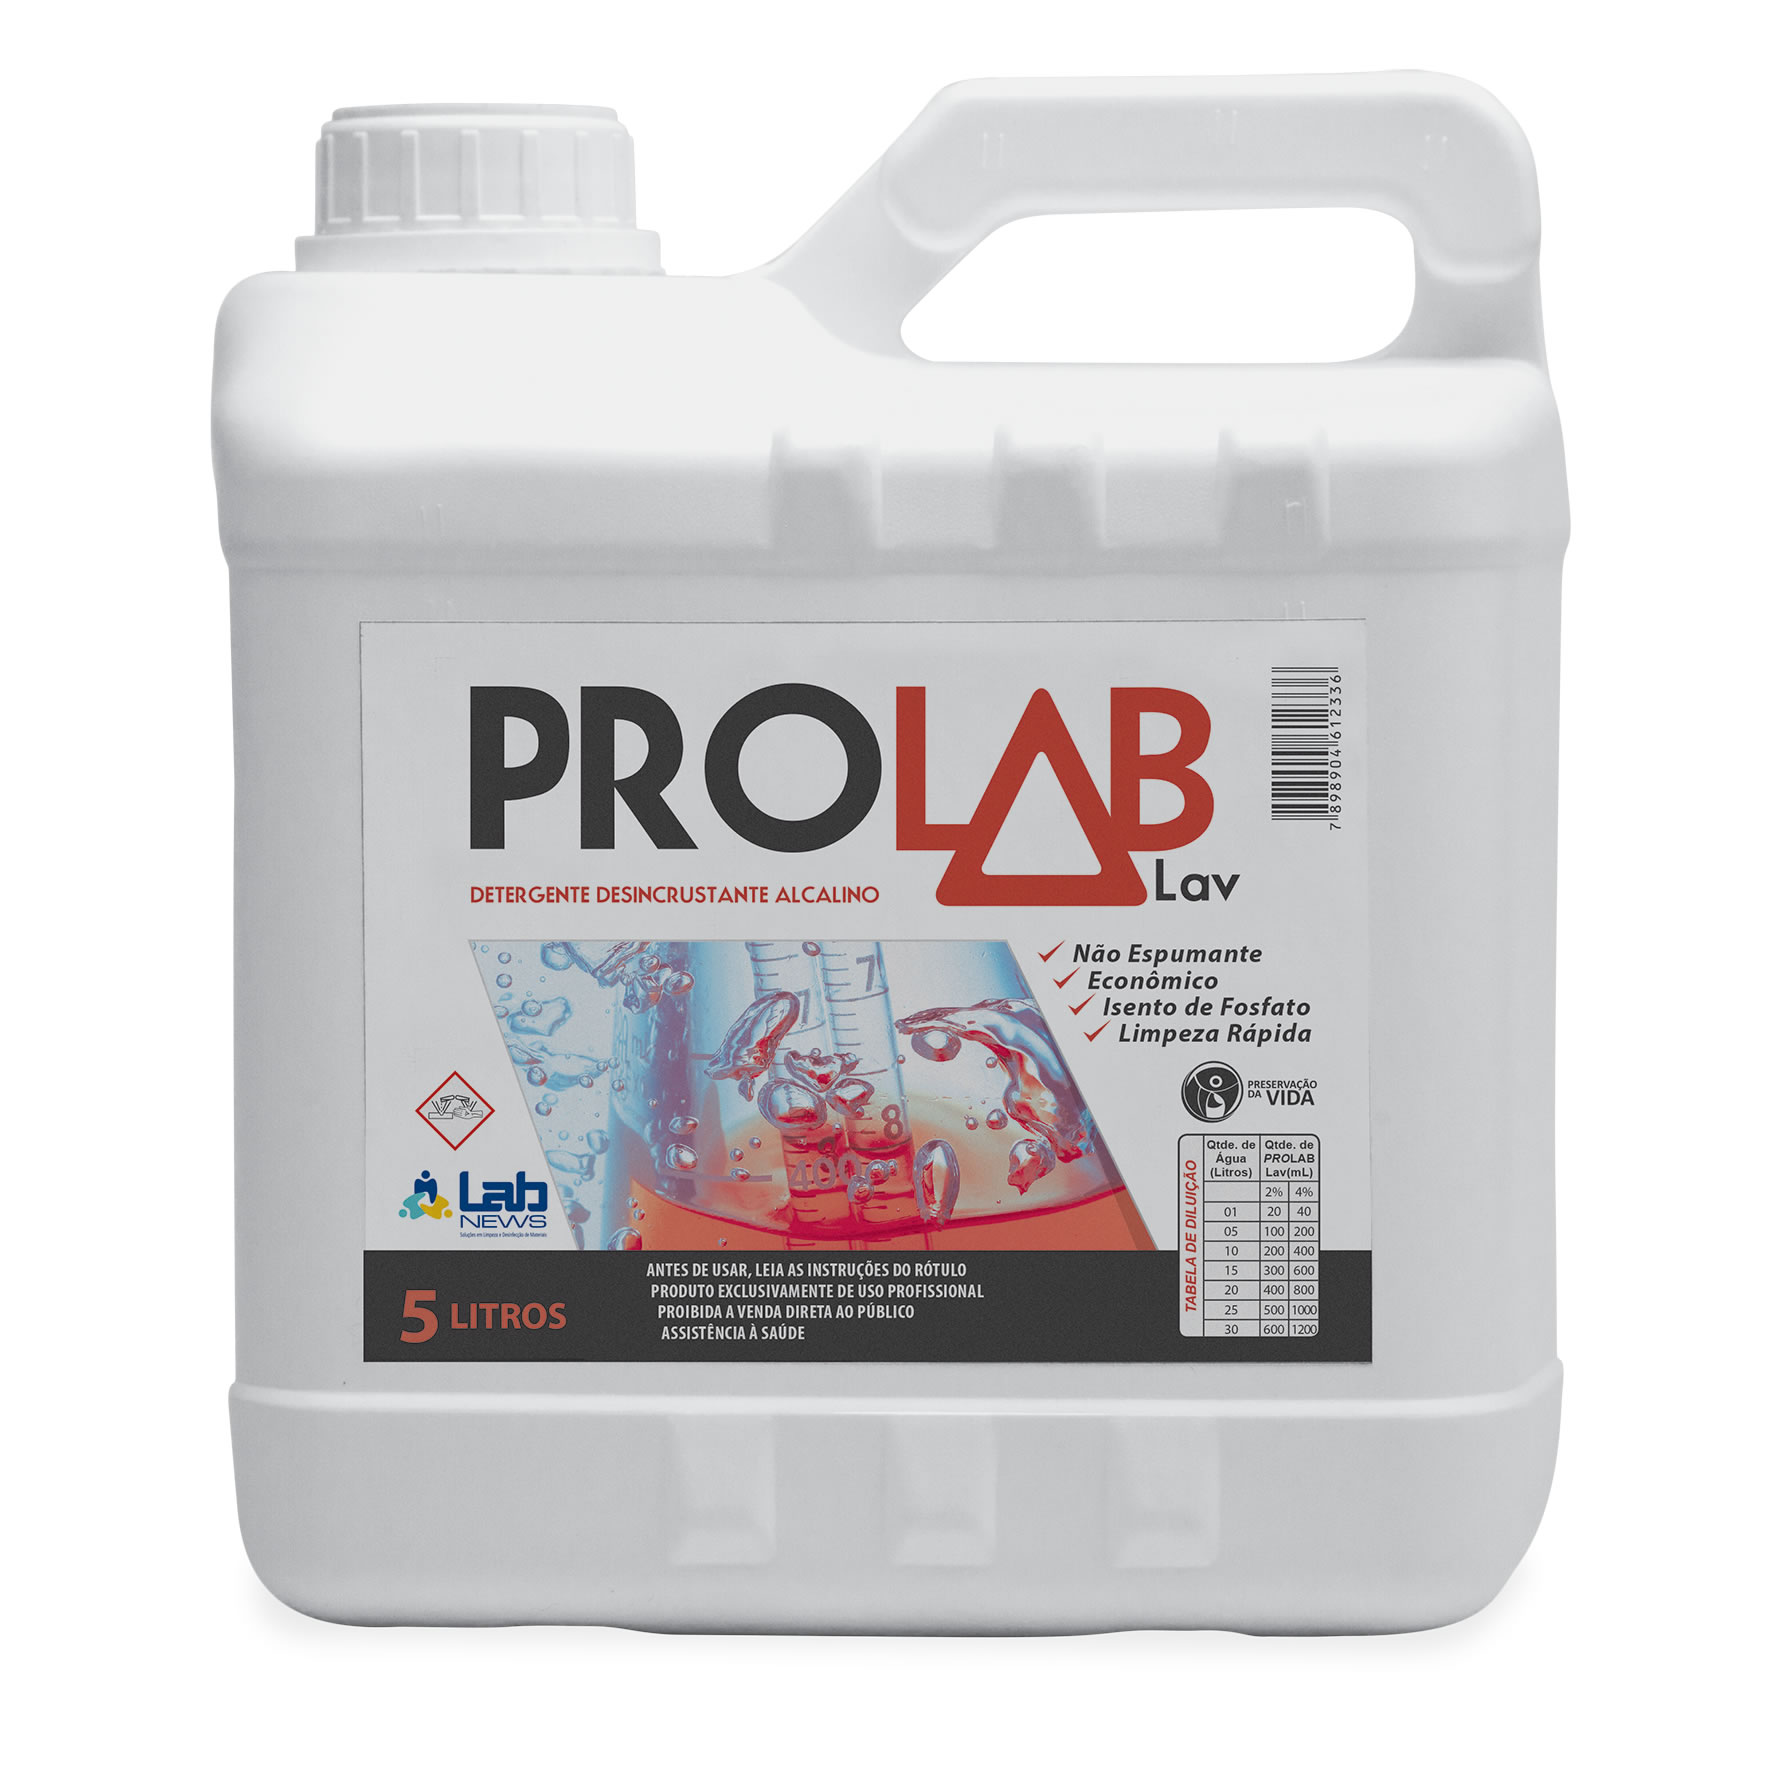 Detergente Prolab Lav fr com 5 litros